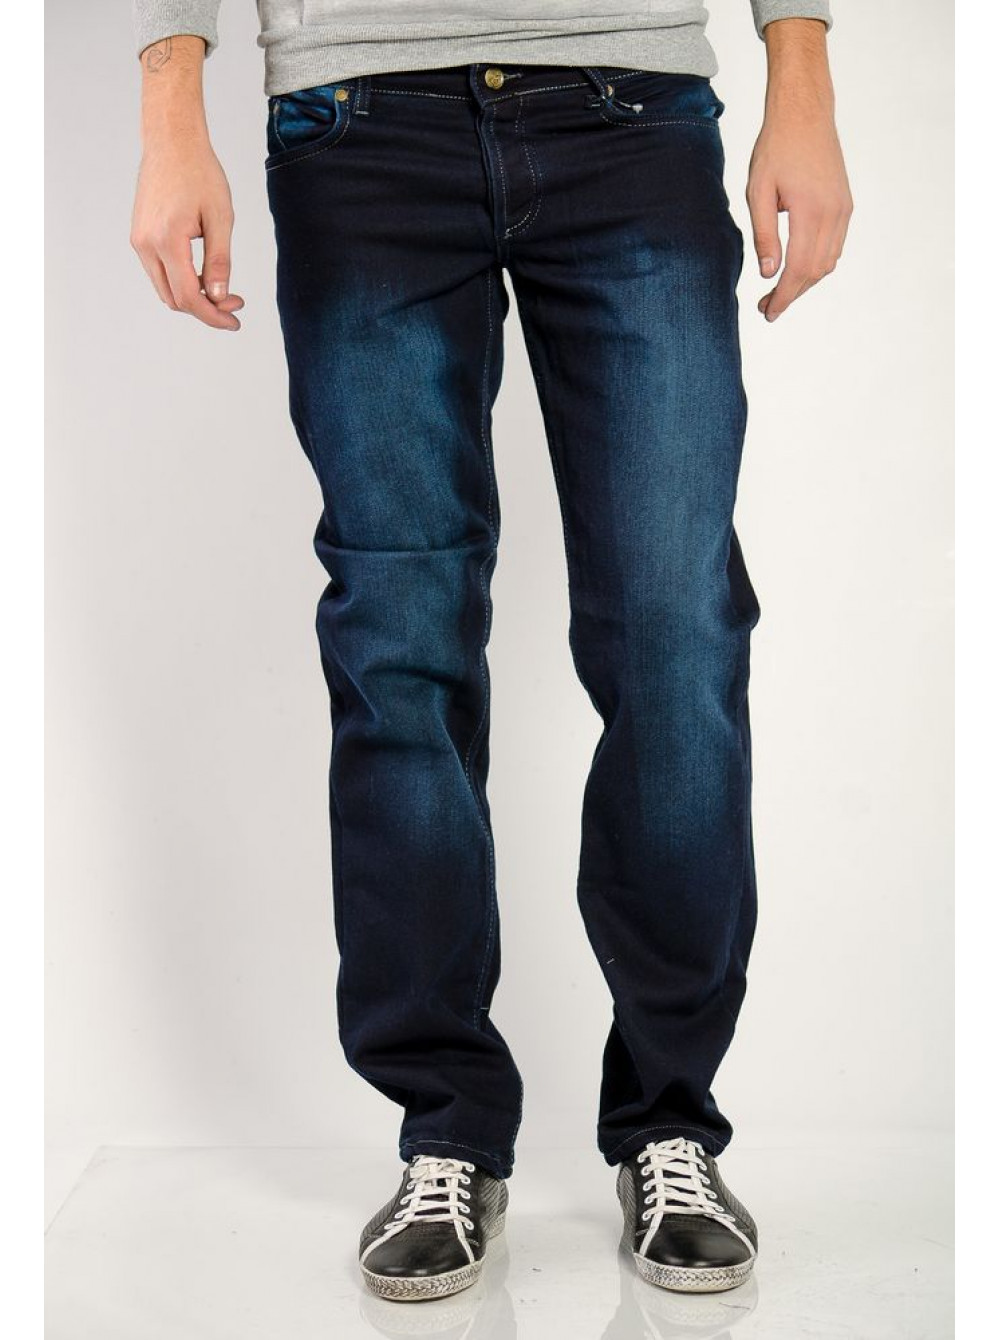 Купить мужские джинсы в краснодаре. Мужские джинсы. Синие джинсы мужские. Темно синие джинсы мужские. Джинсы мужские классические.